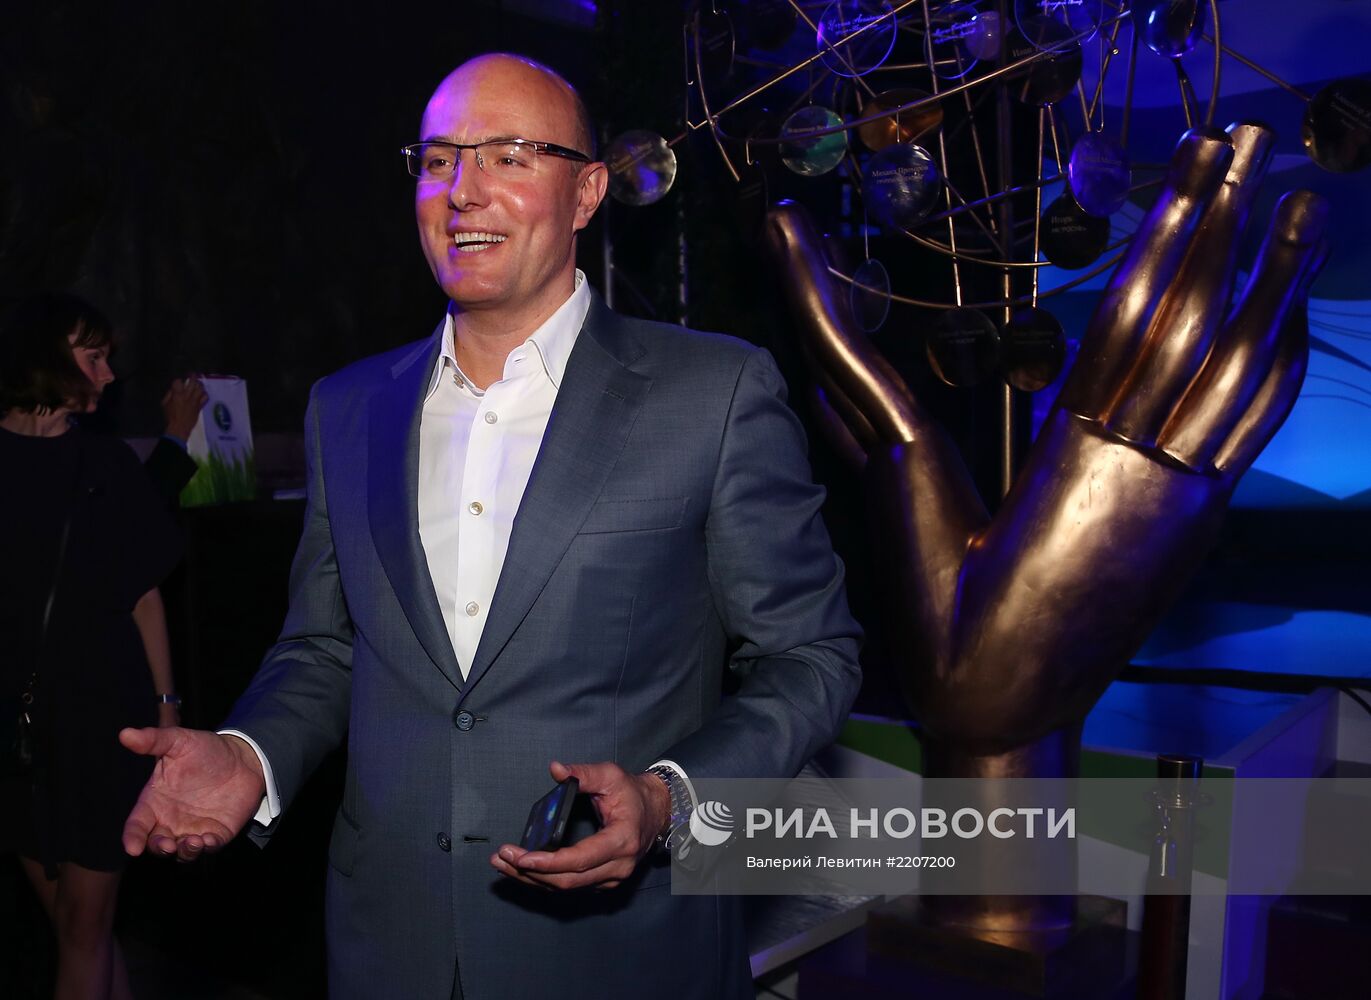 Прием в честь юбилея компании "Мегафон" на ПМЭФ в Петербурге